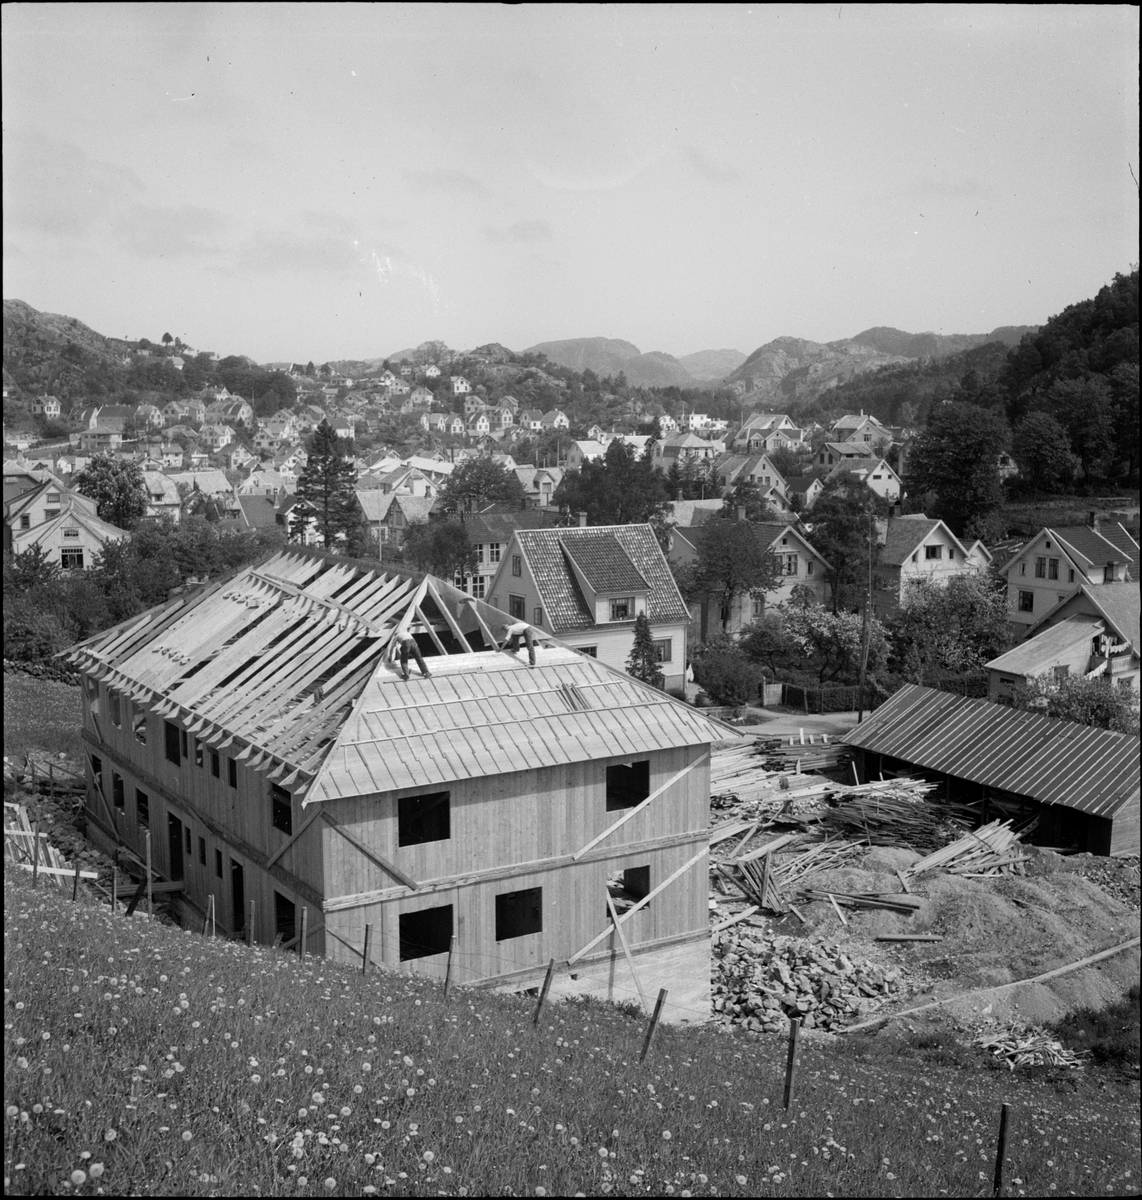 Eigersund landssogns Herredshus under bygging. Det arbeides med å tette taket.